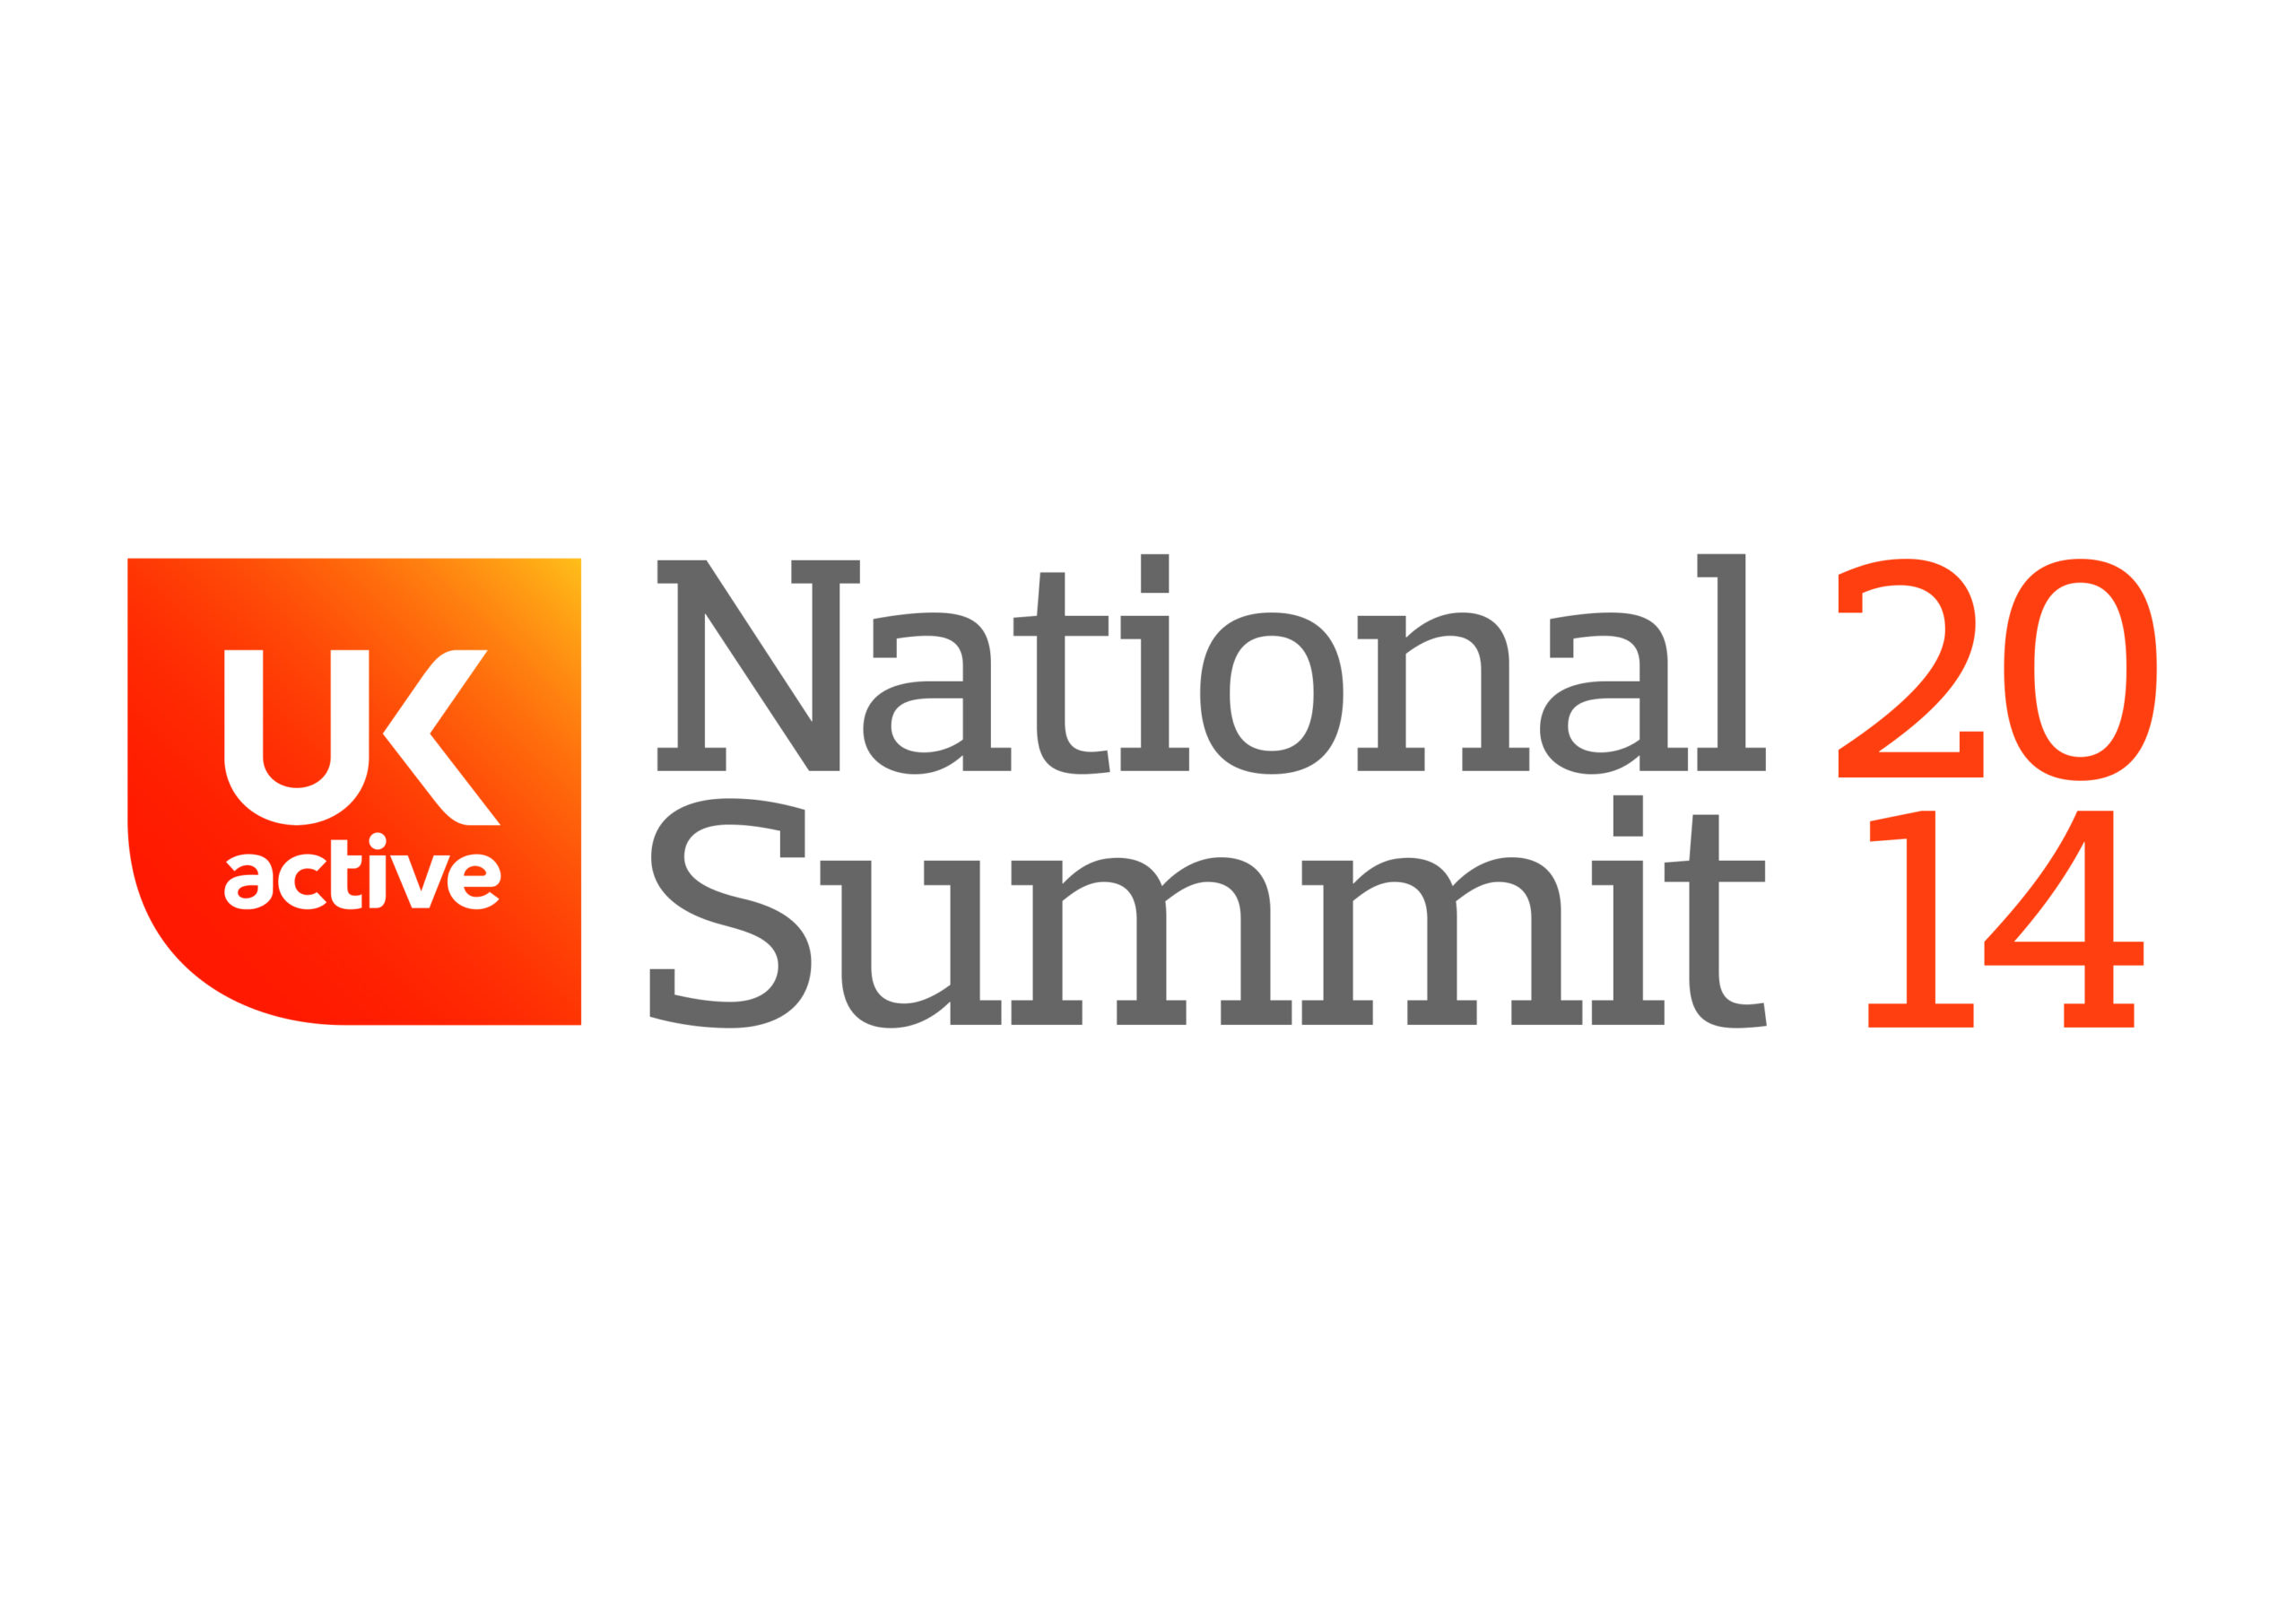 ukactive National Summit leaders revealed